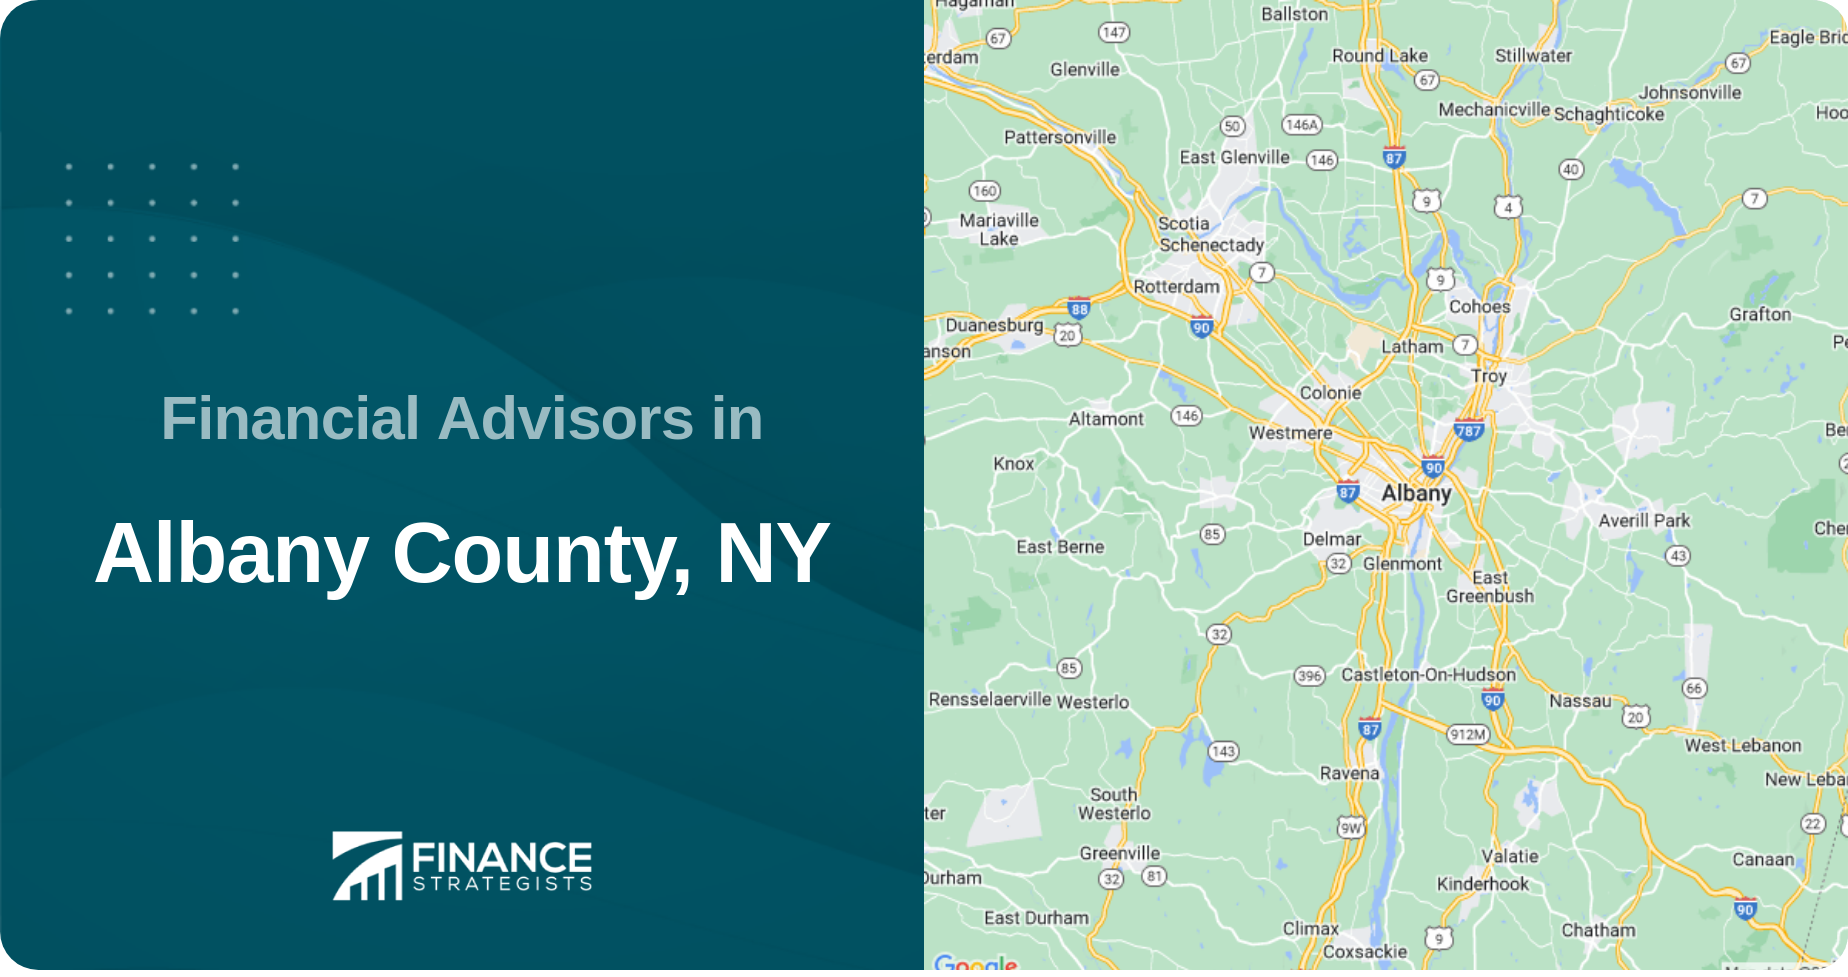 Financial Advisors in Albany County, NY